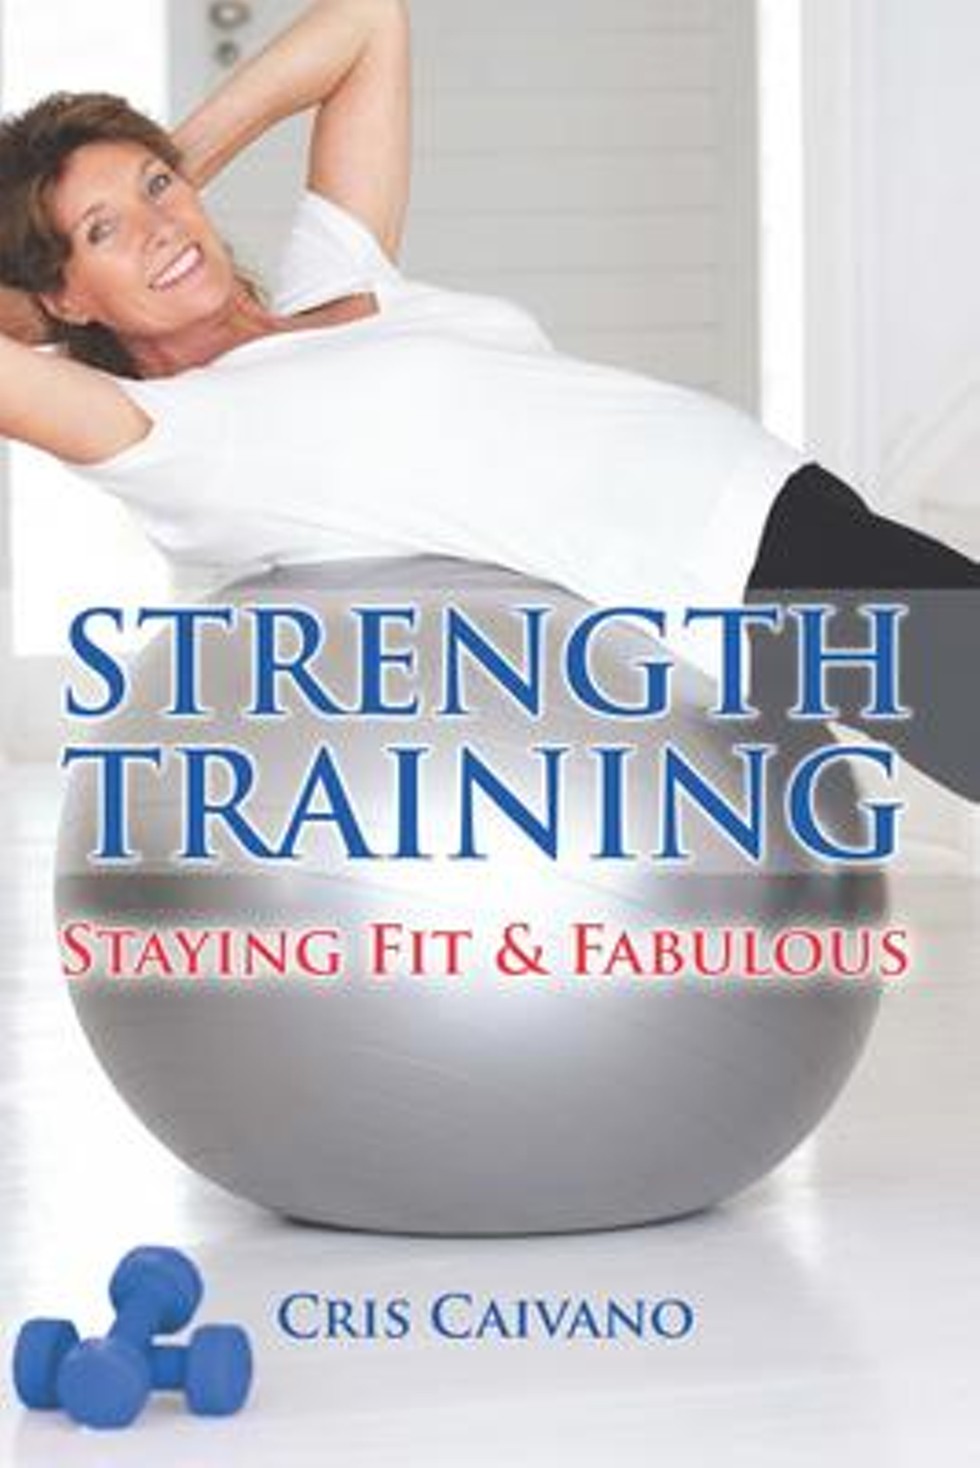 strength_training_cover_art.jpg